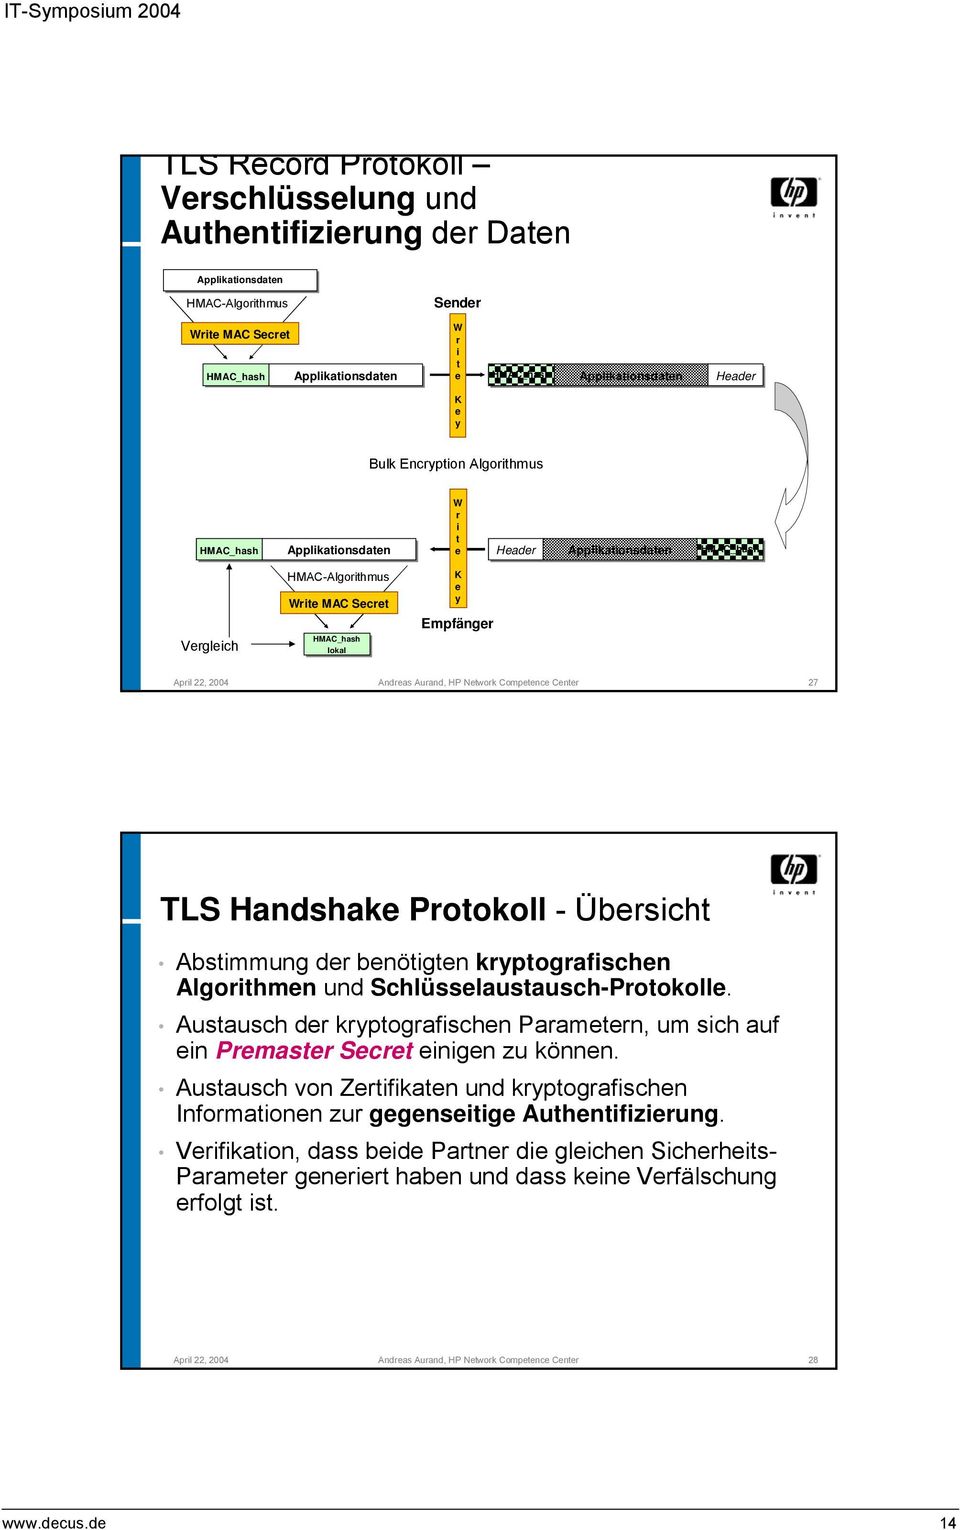 Aurand, HP Network Competence Center 27 TLS Handshake Protokoll - Übersicht Abstimmung der benötigten kryptografischen Algorithmen und Schlüsselaustausch-Protokolle.